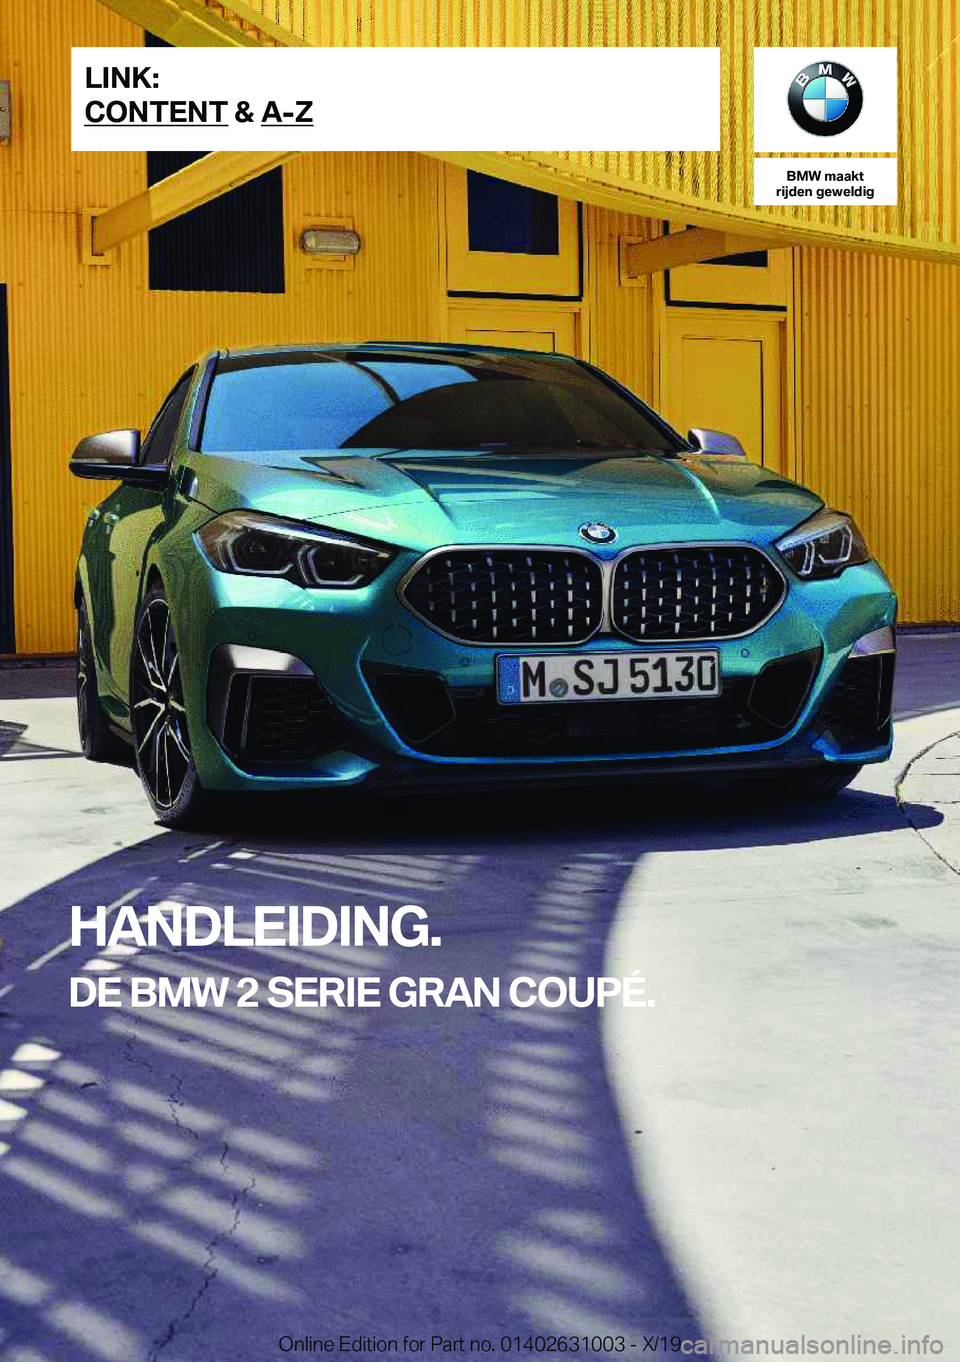 BMW 2 SERIES GRAN COUPE 2020  Instructieboekjes (in Dutch) �B�M�W��m�a�a�k�t
�r�i�j�d�e�n��g�e�w�e�l�d�i�g
�H�A�N�D�L�E�I�D�I�N�G�.
�D�E��B�M�W��2��S�E�R�I�E��G�R�A�N��C�O�U�P�